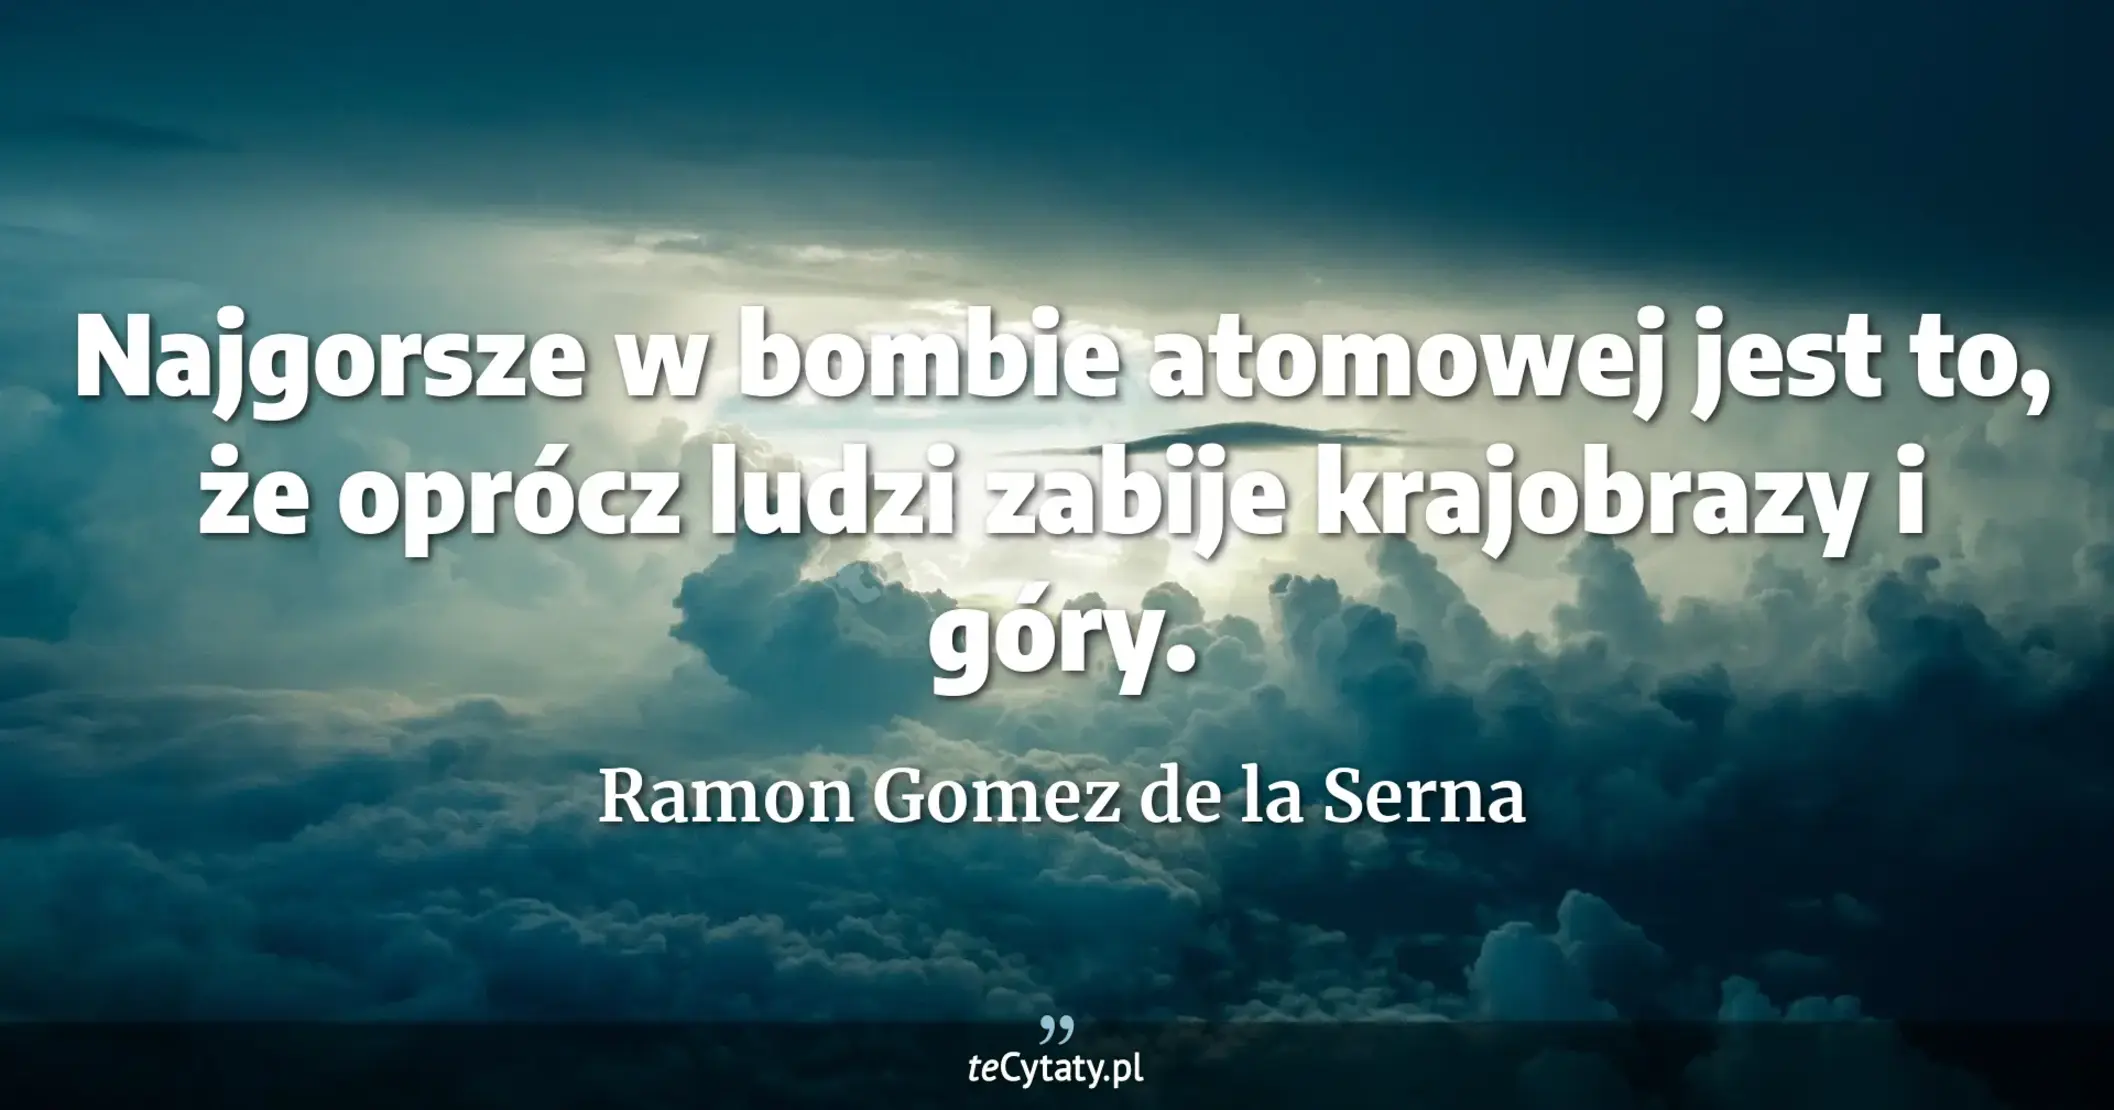 Najgorsze w bombie atomowej jest to, że oprócz ludzi zabije krajobrazy i góry. - Ramon Gomez de la Serna